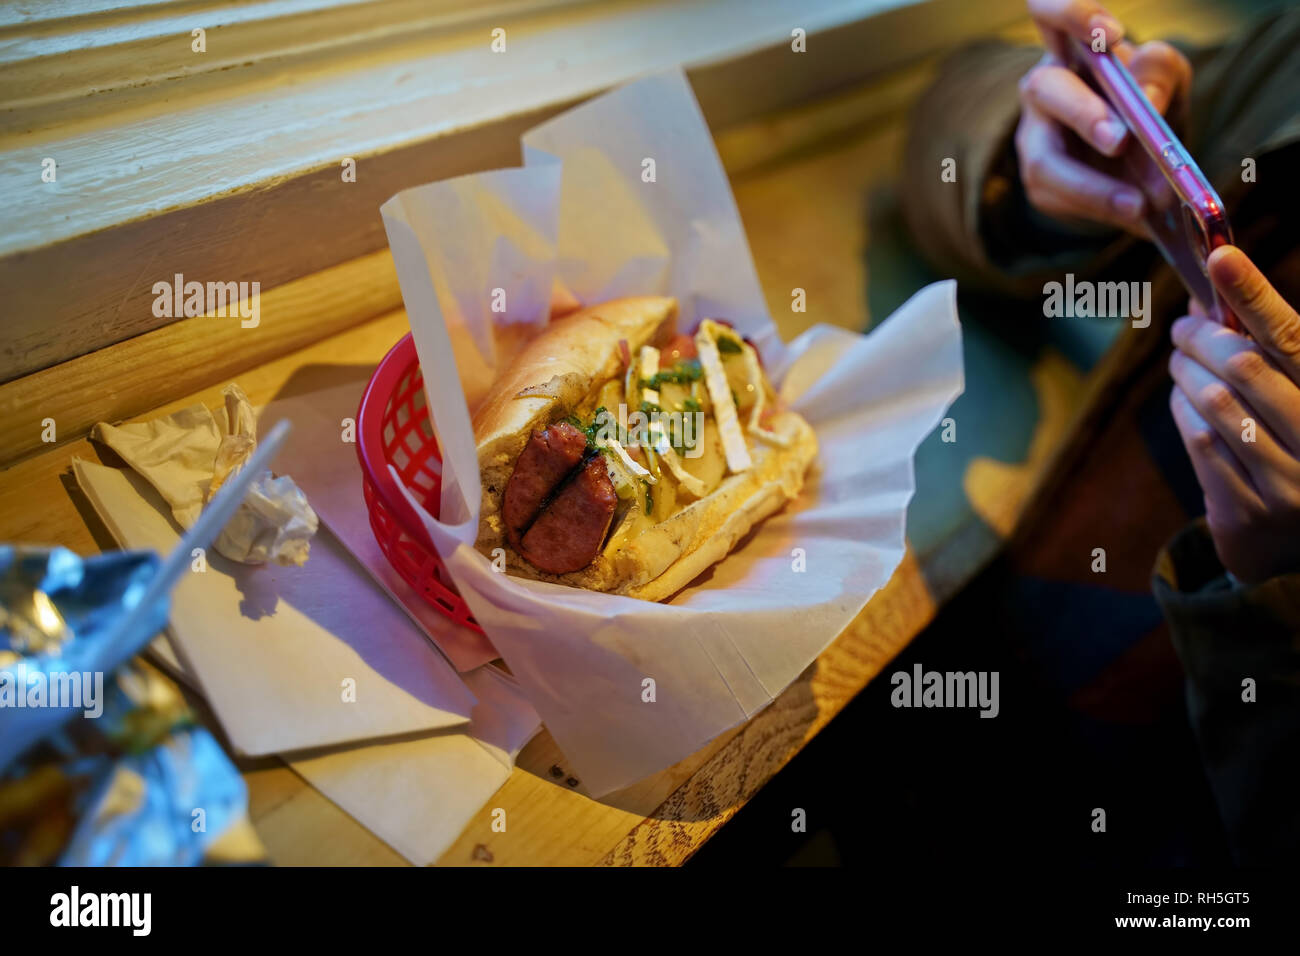 Specialità alimentari posti come questi awesome hot dog piatti con una folle mix di condimenti sono hits on social media. Foto Stock